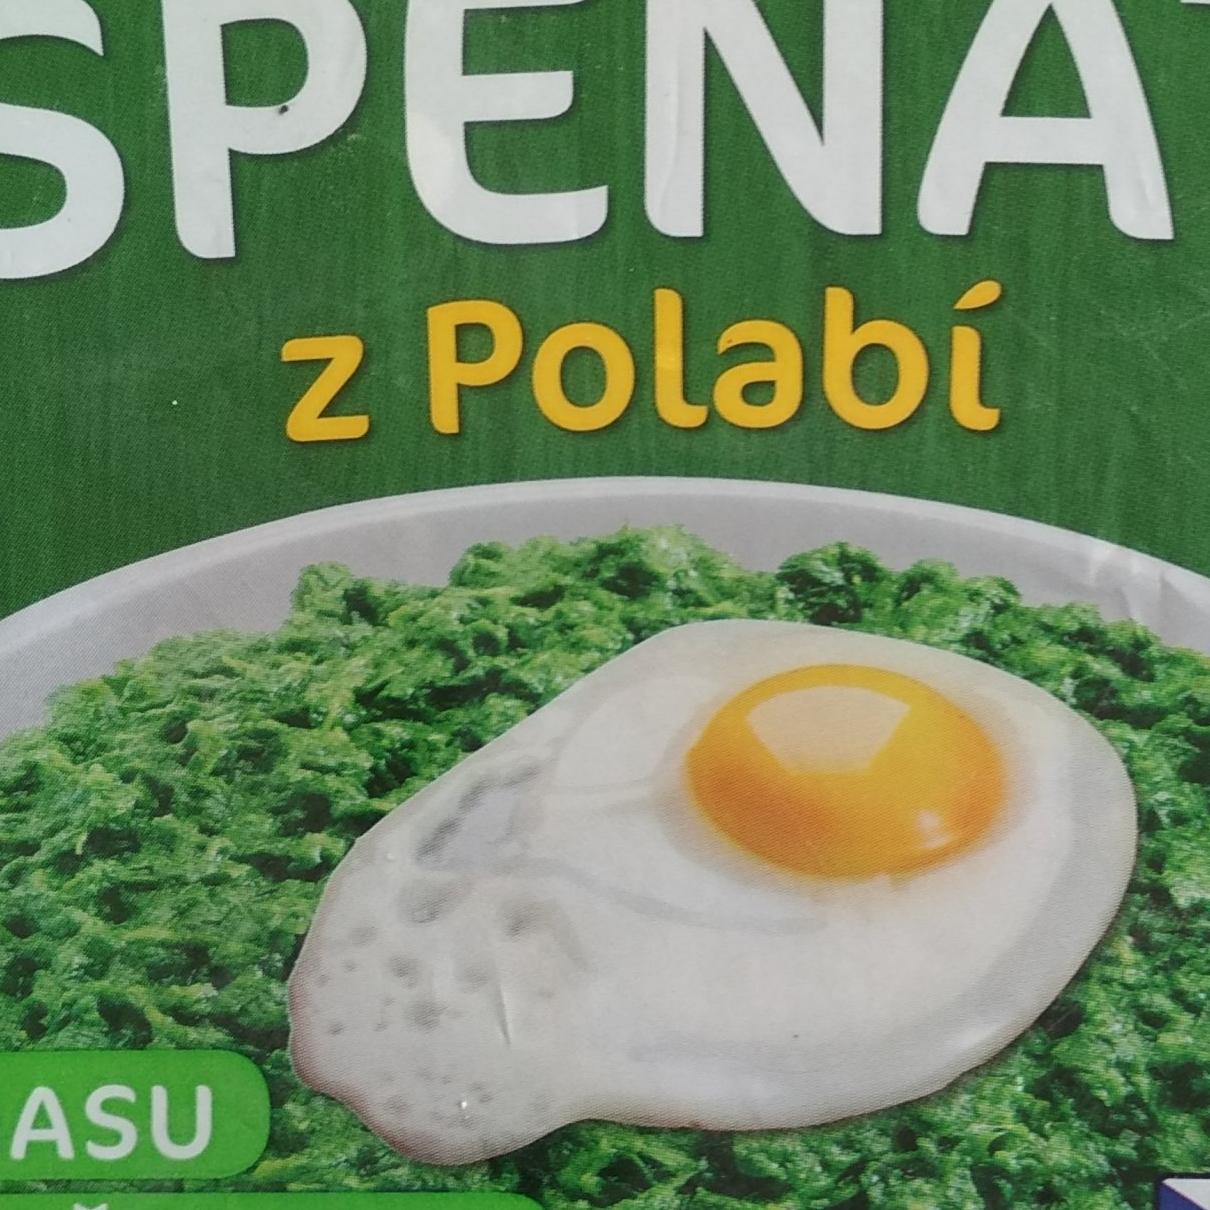 Fotografie - Český špenát z Polabí